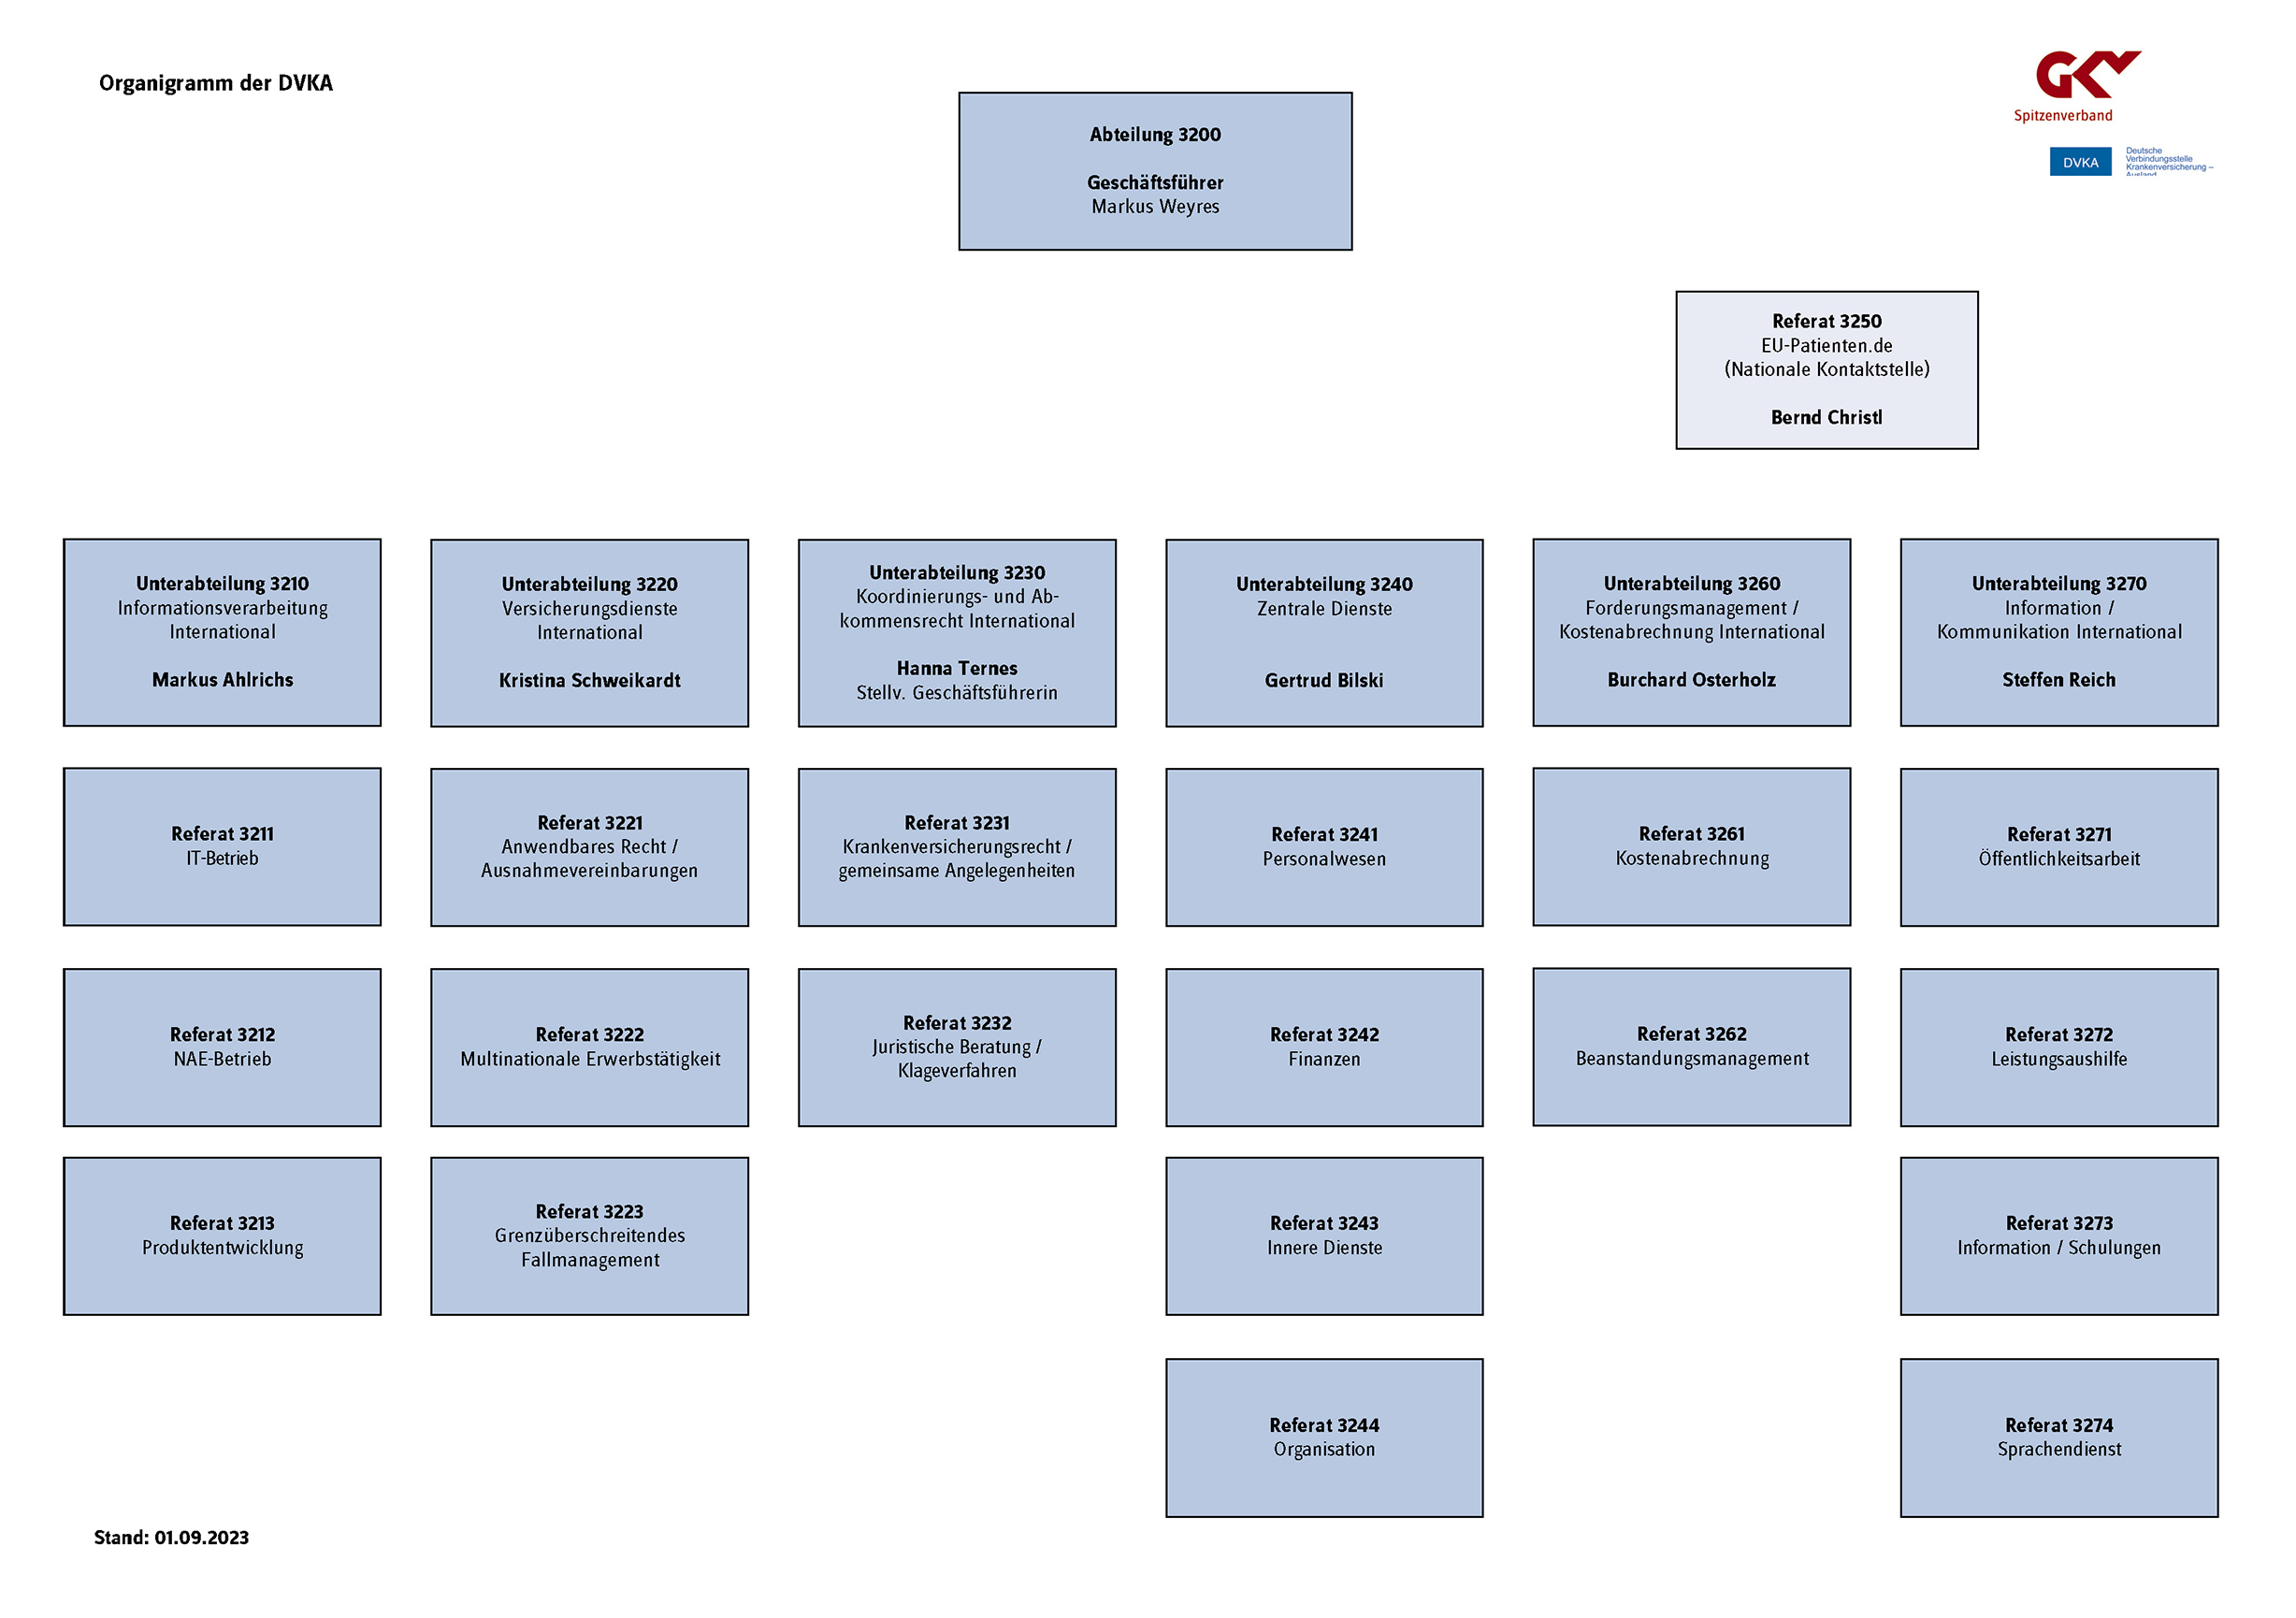 Schematische Darstellung der Organisationsstruktur der DVKA